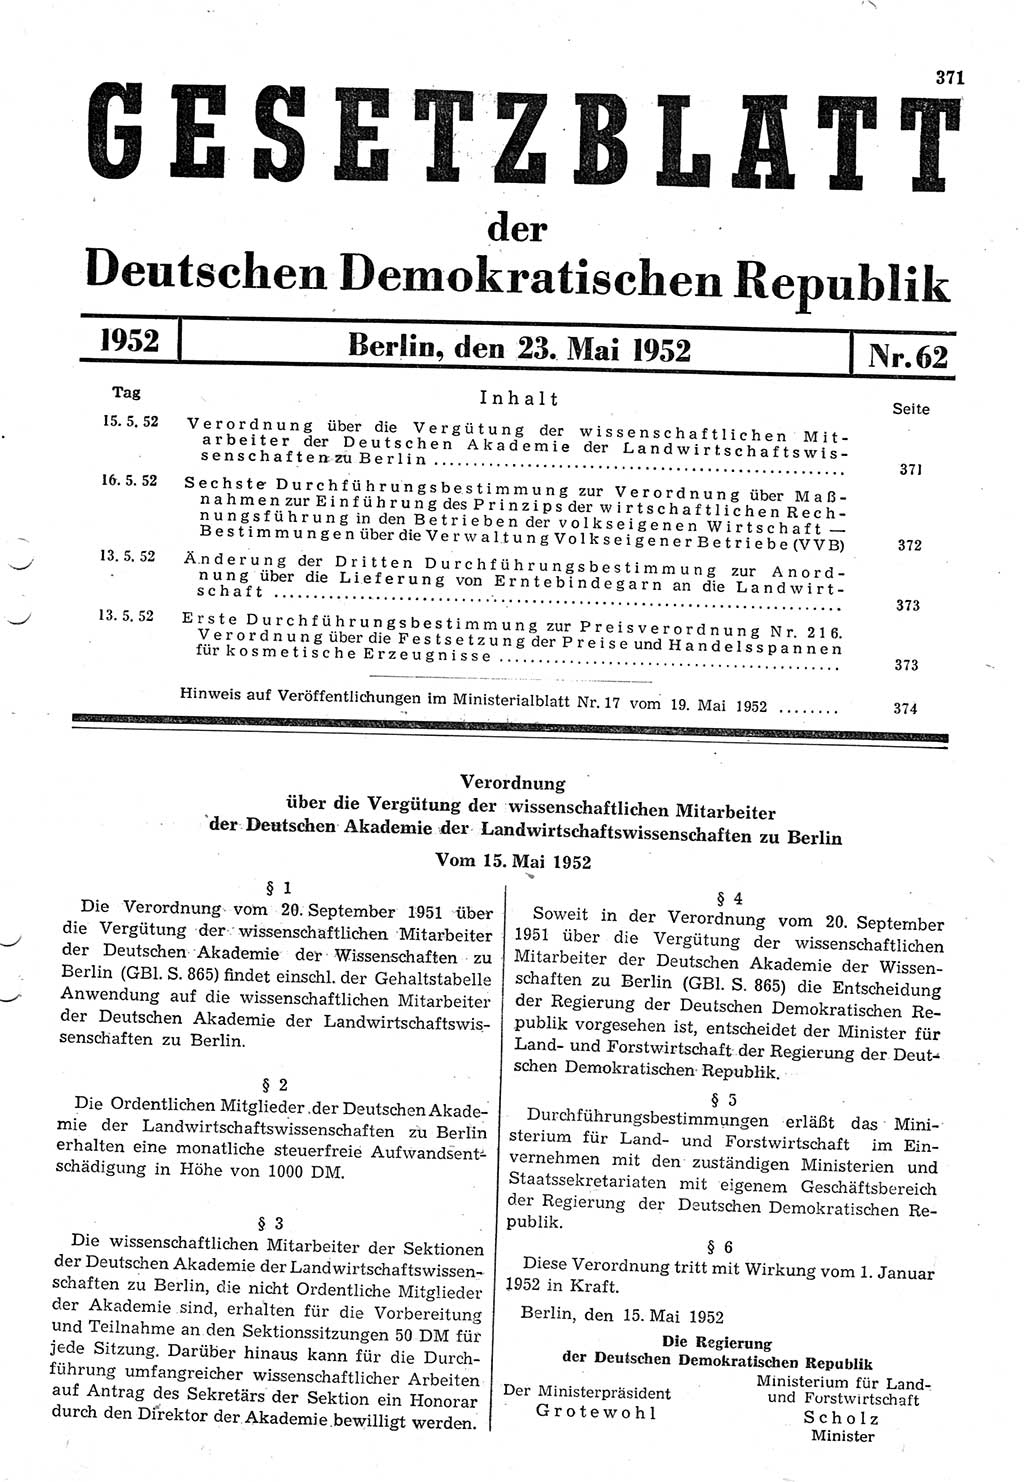 Gesetzblatt (GBl.) der Deutschen Demokratischen Republik (DDR) 1952, Seite 371 (GBl. DDR 1952, S. 371)